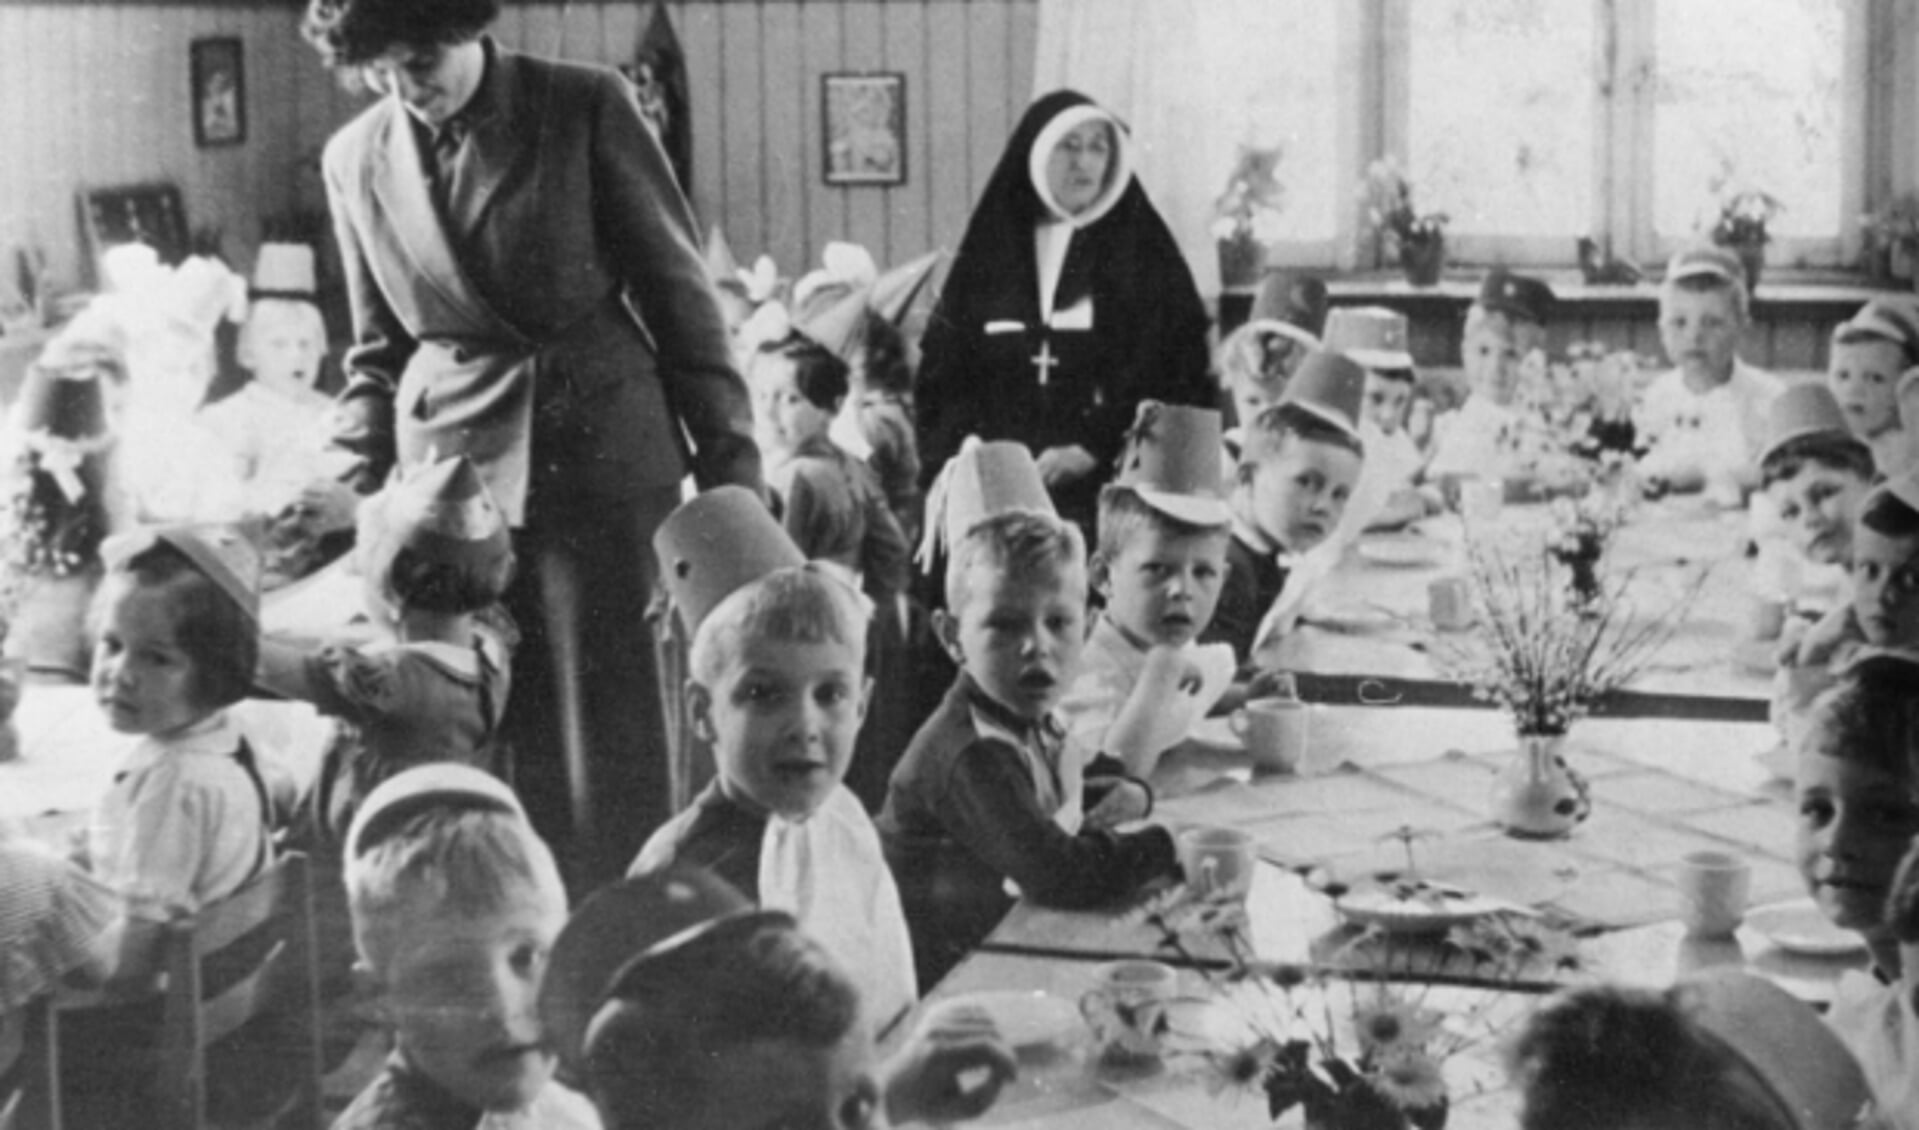 Kleuterschool St. Jan Baptist Oerle. Zuster Emerentia en juffrouw Nellie Ras - Brouwers (1954).